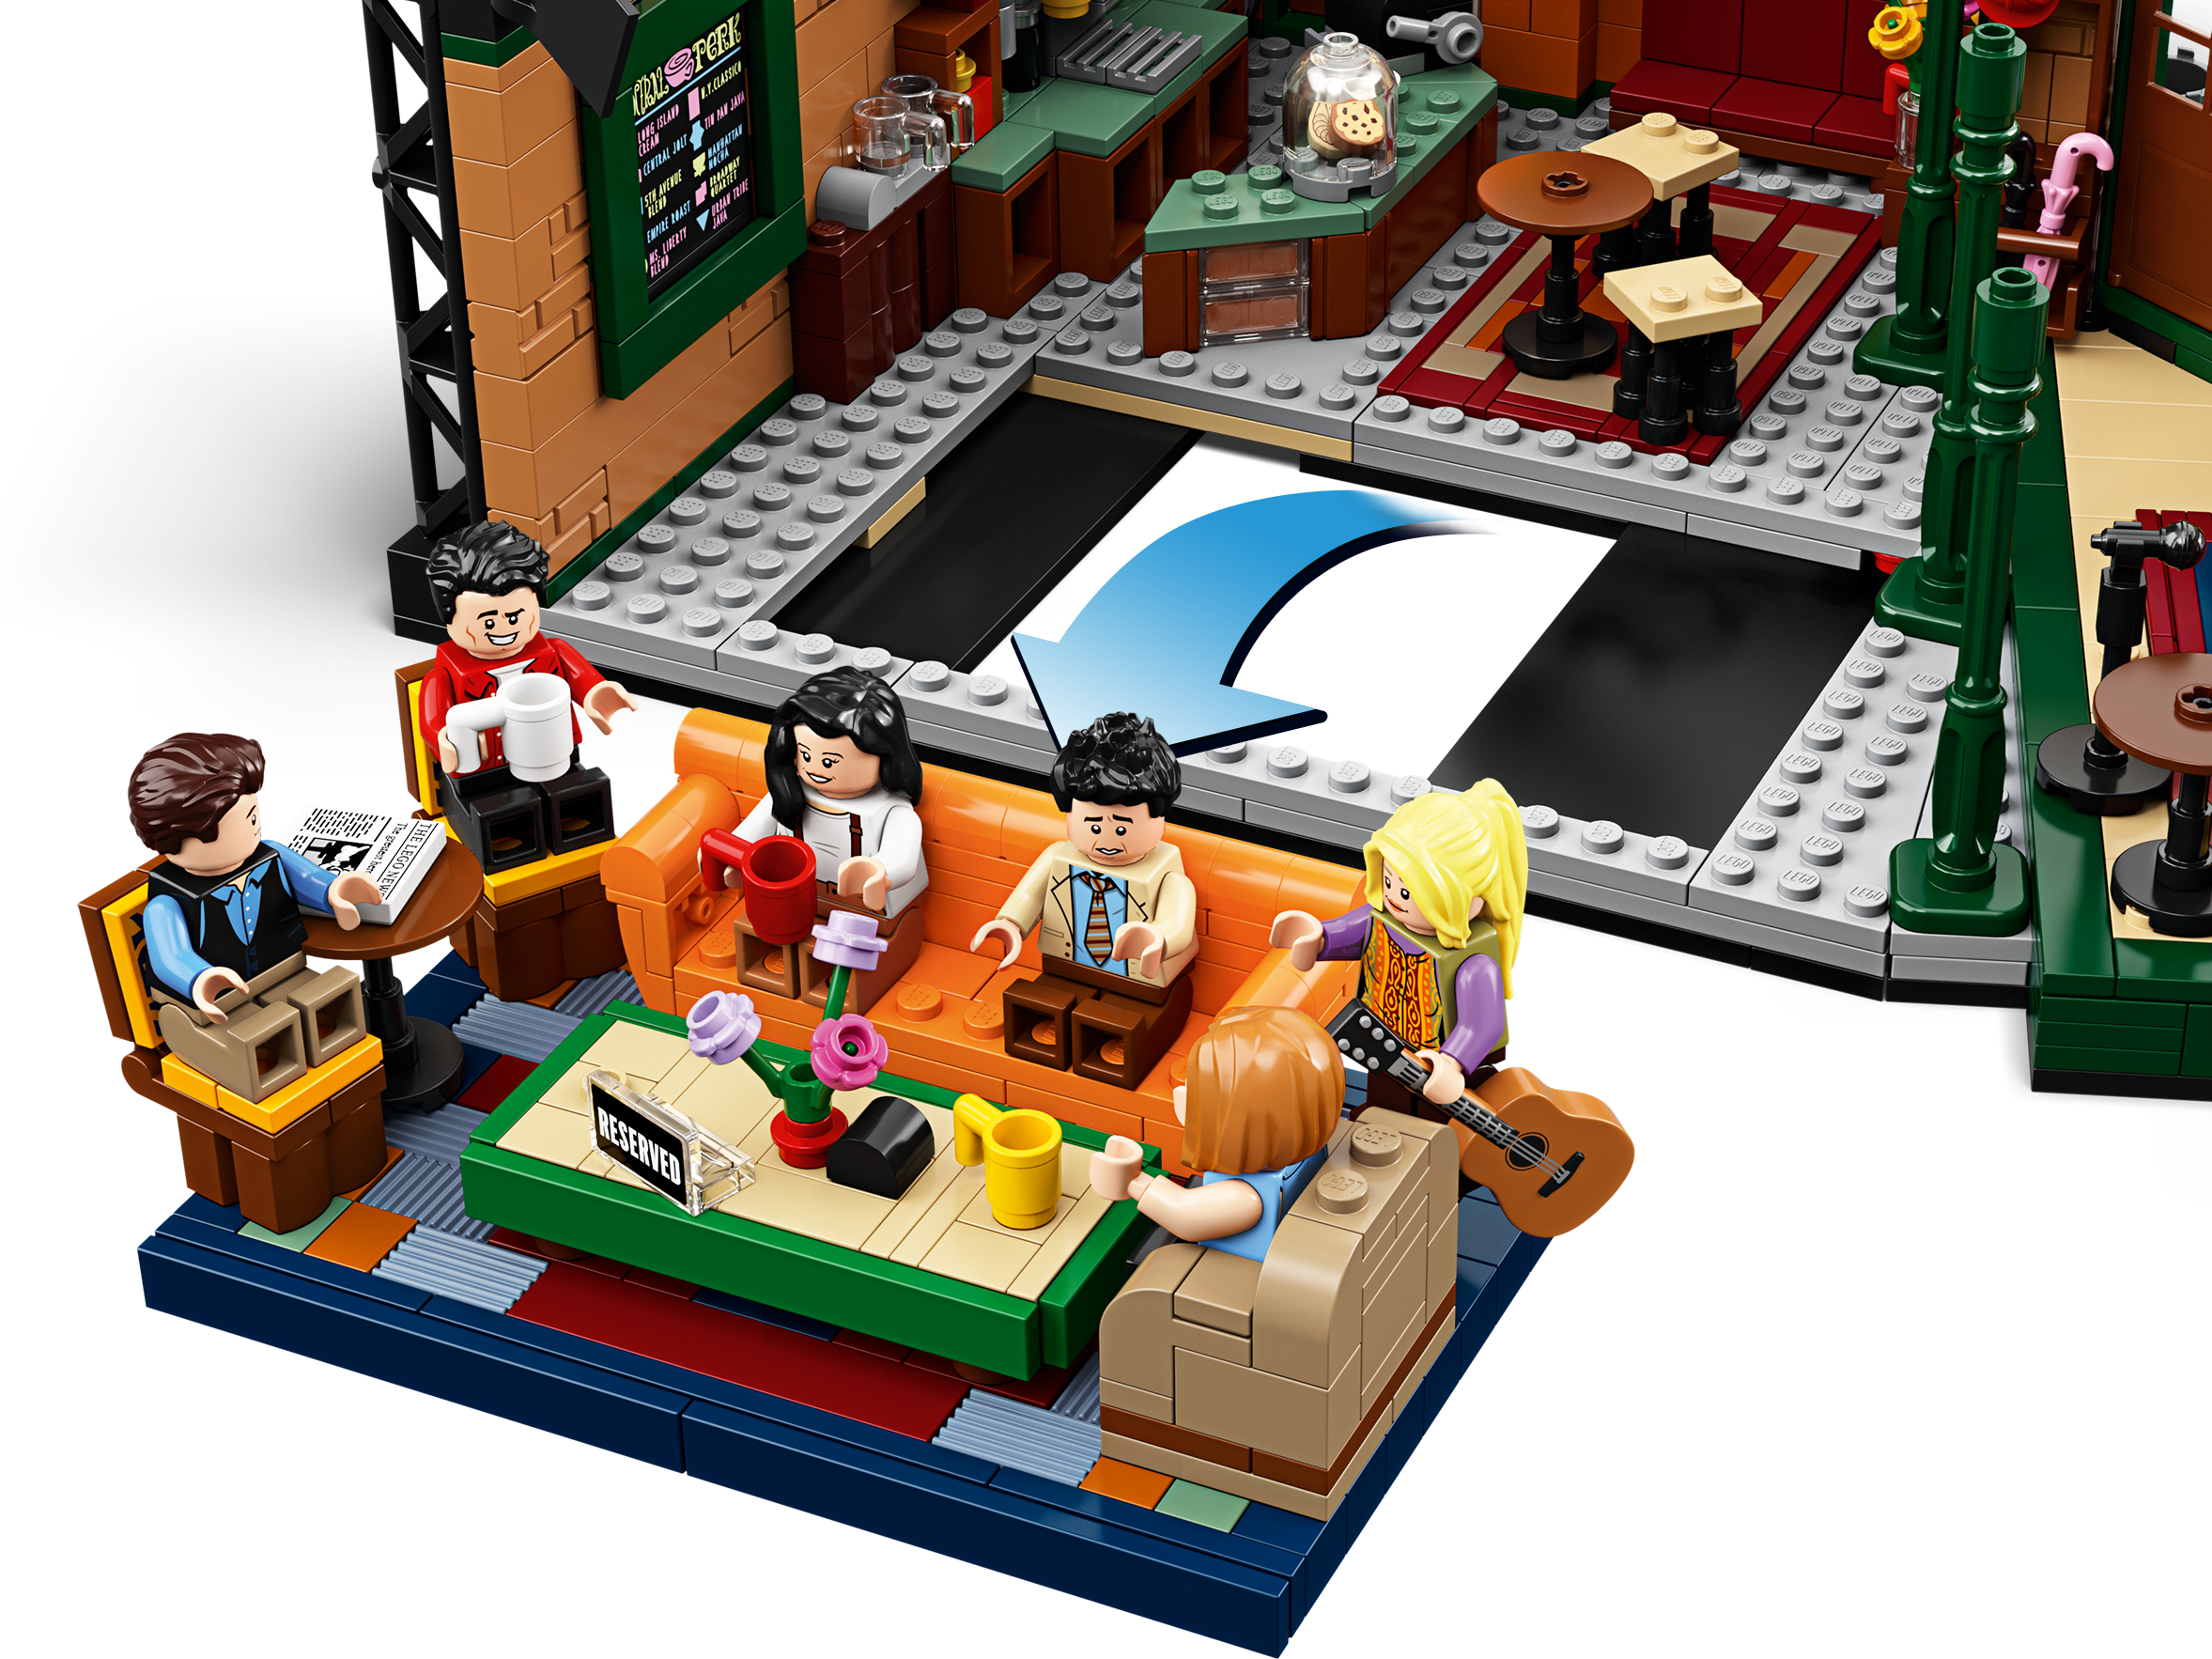 LEGO 21319 Ideas Central Perk